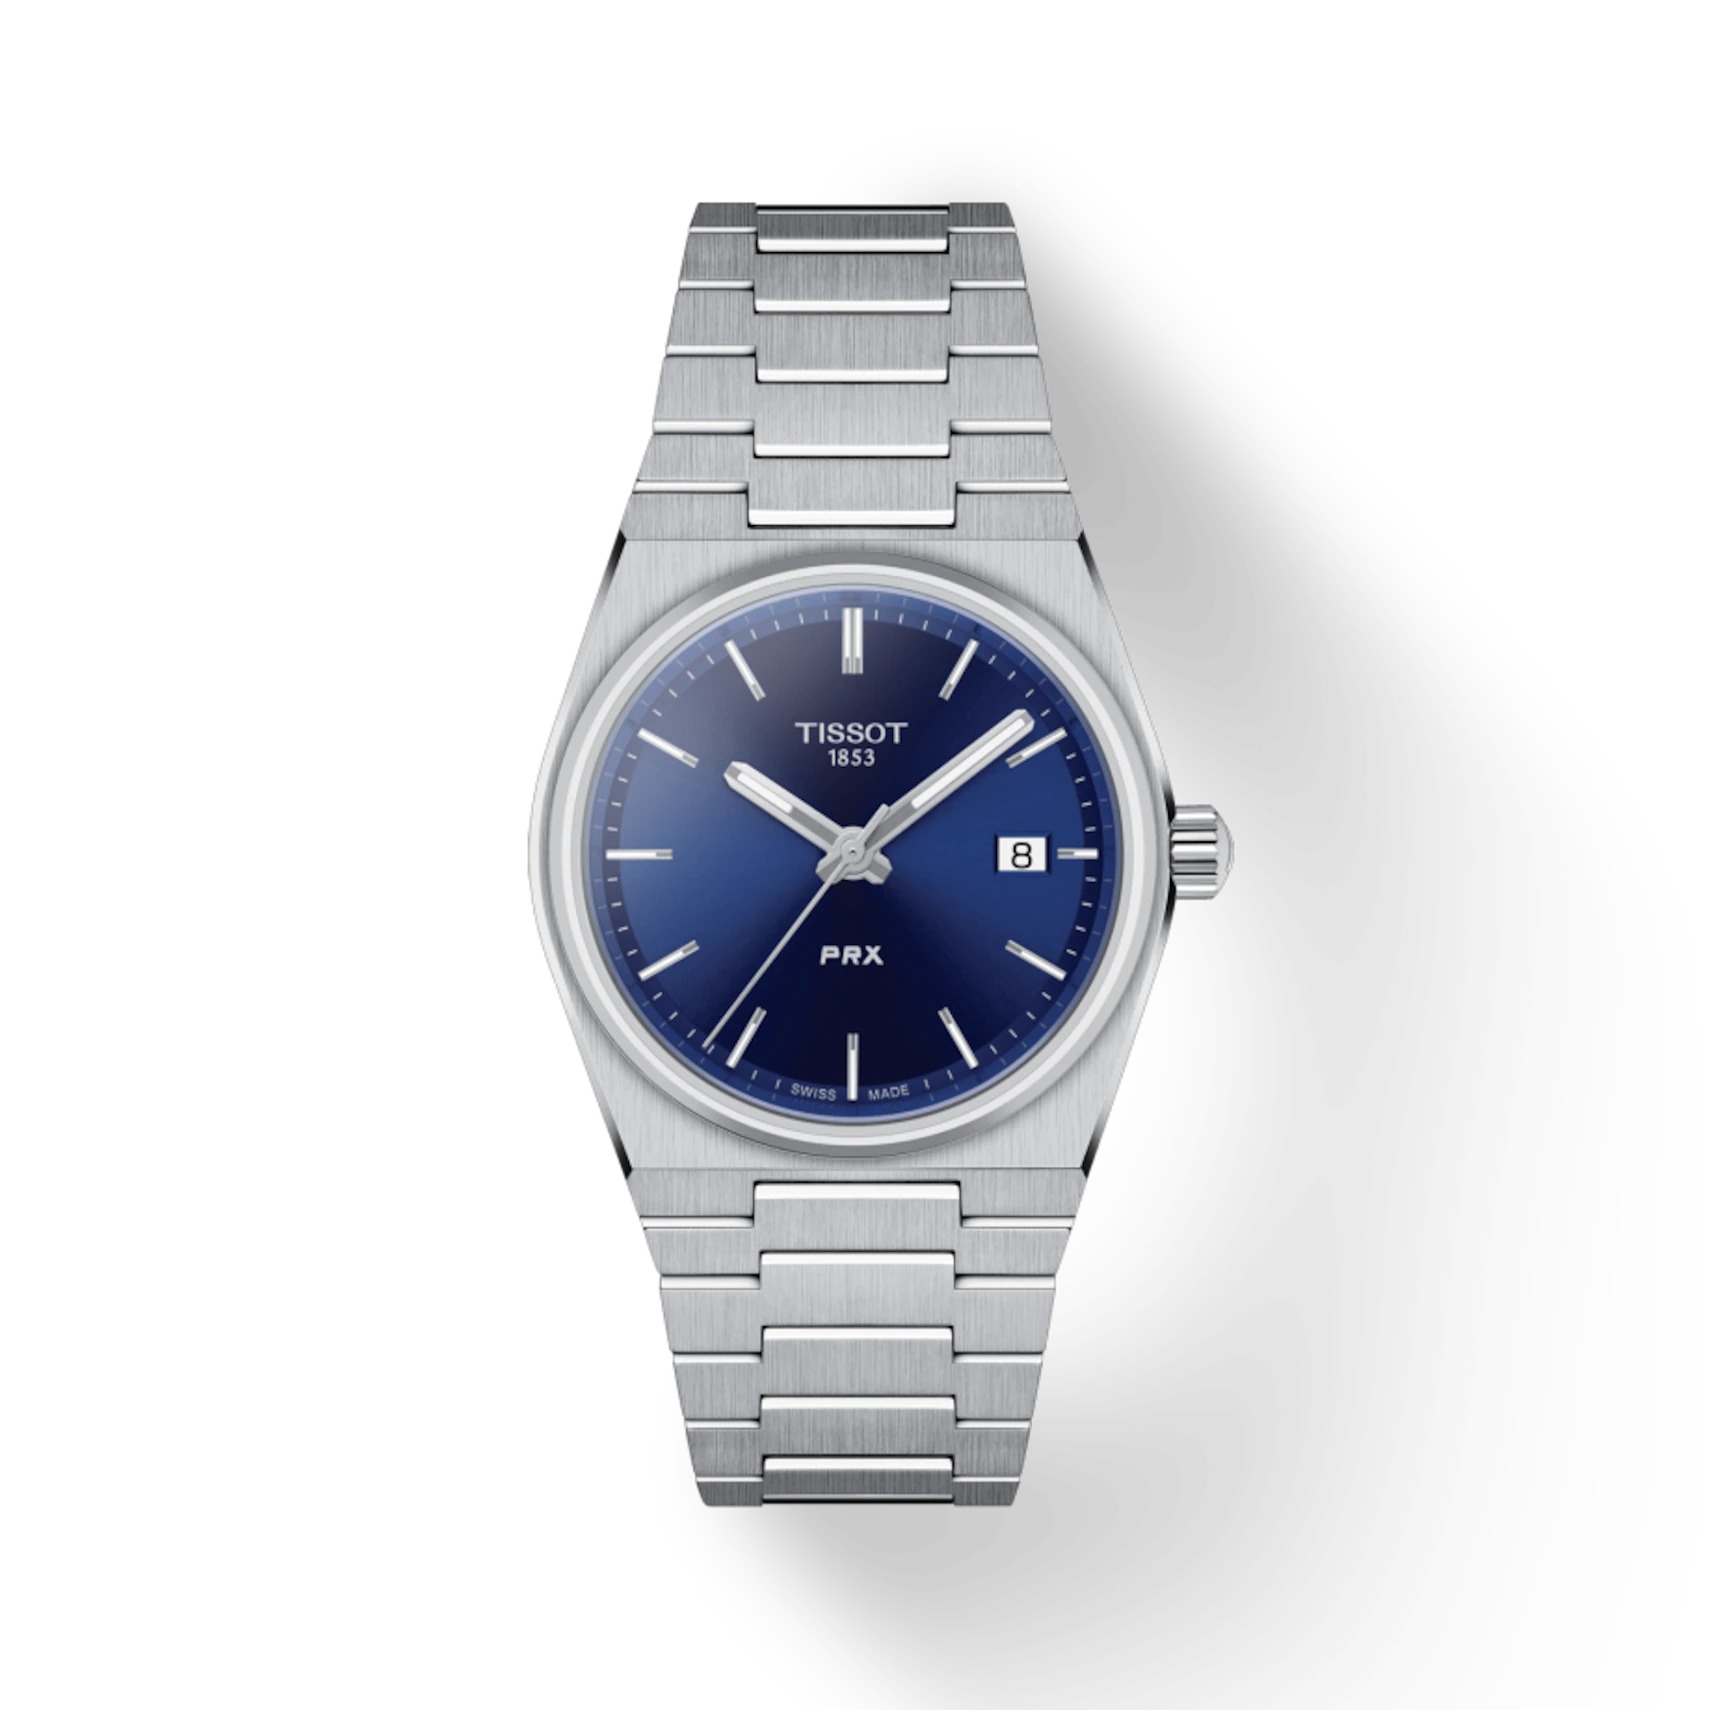 Questa è l'immagine frontale dell'orologio tissot prx 35 mm con quadrante blu e movimento al quarzo